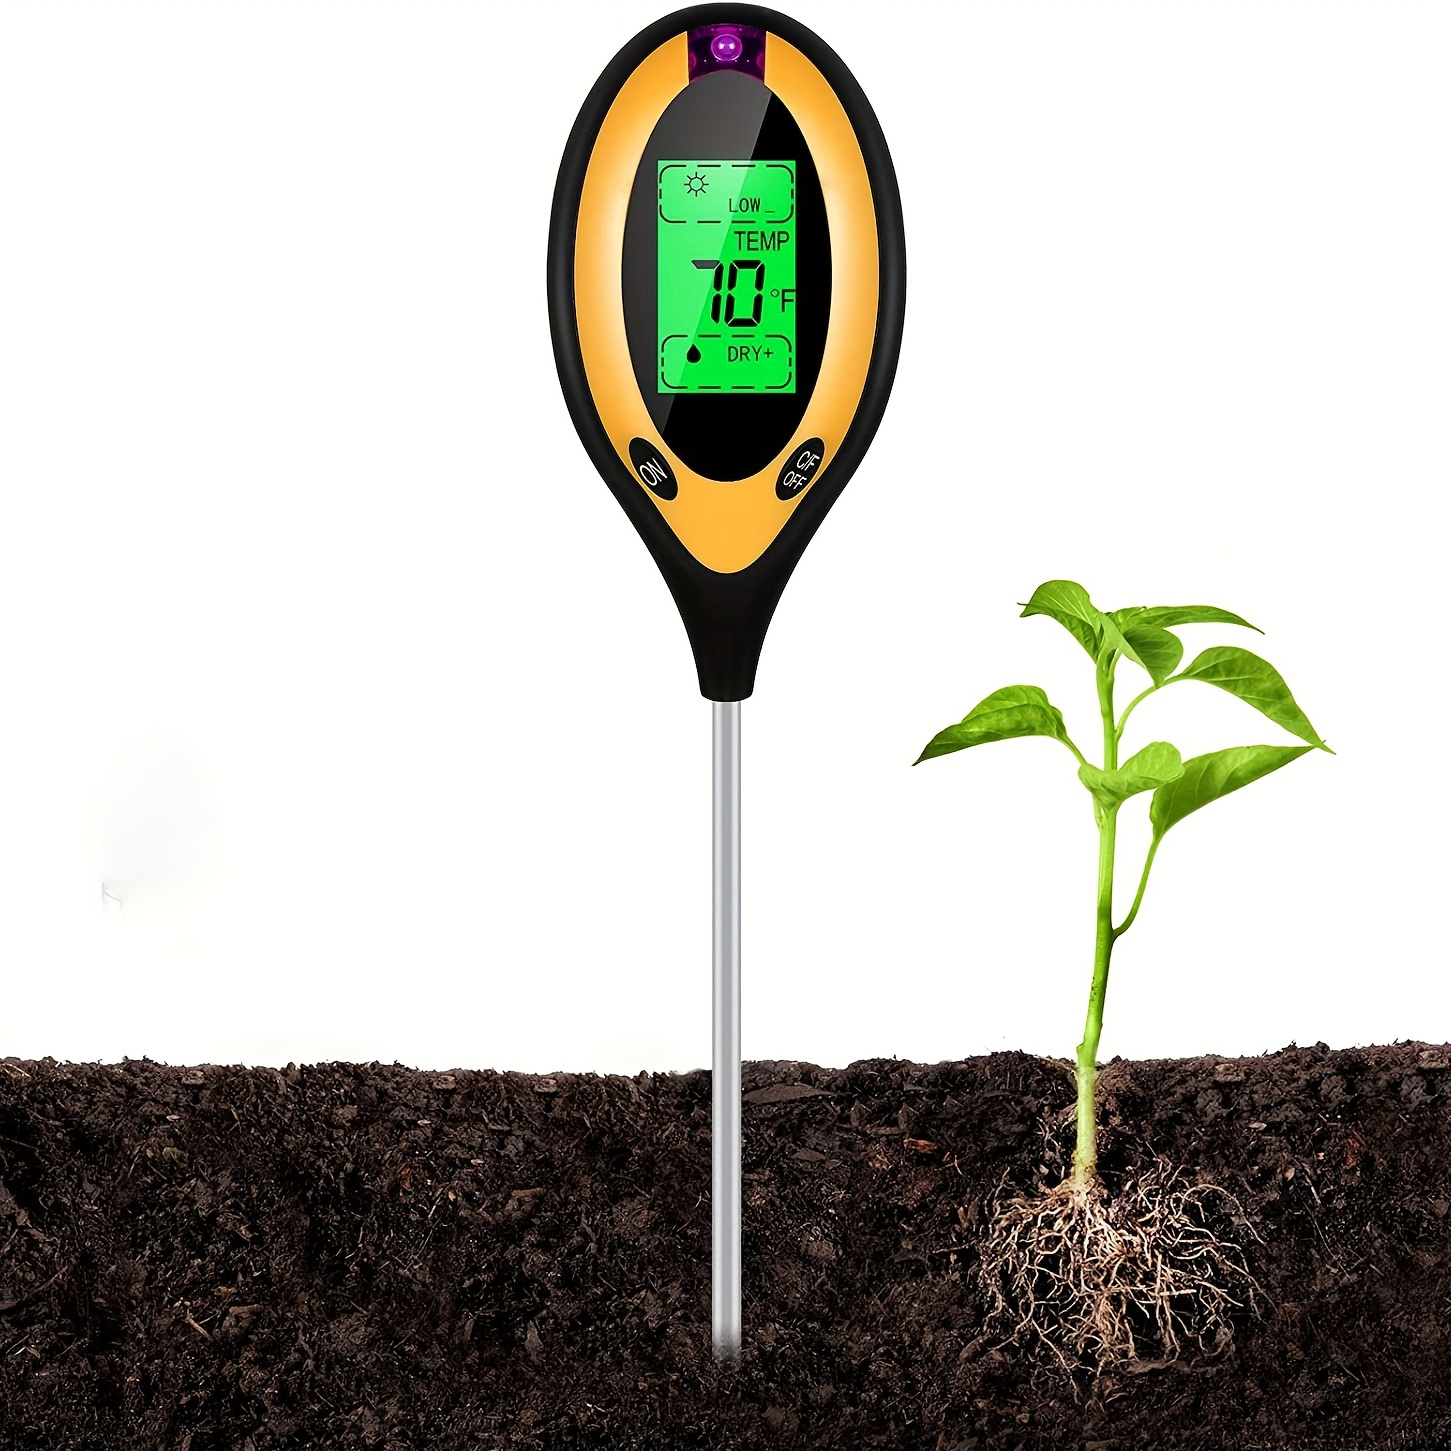 4-in-1 Soil Moisture Meter, Digital Plant Temperature, Soil Moisture, PH  Meter, Sunlight Intensity, Moisture Meter for House Plants, Soil Test Meter